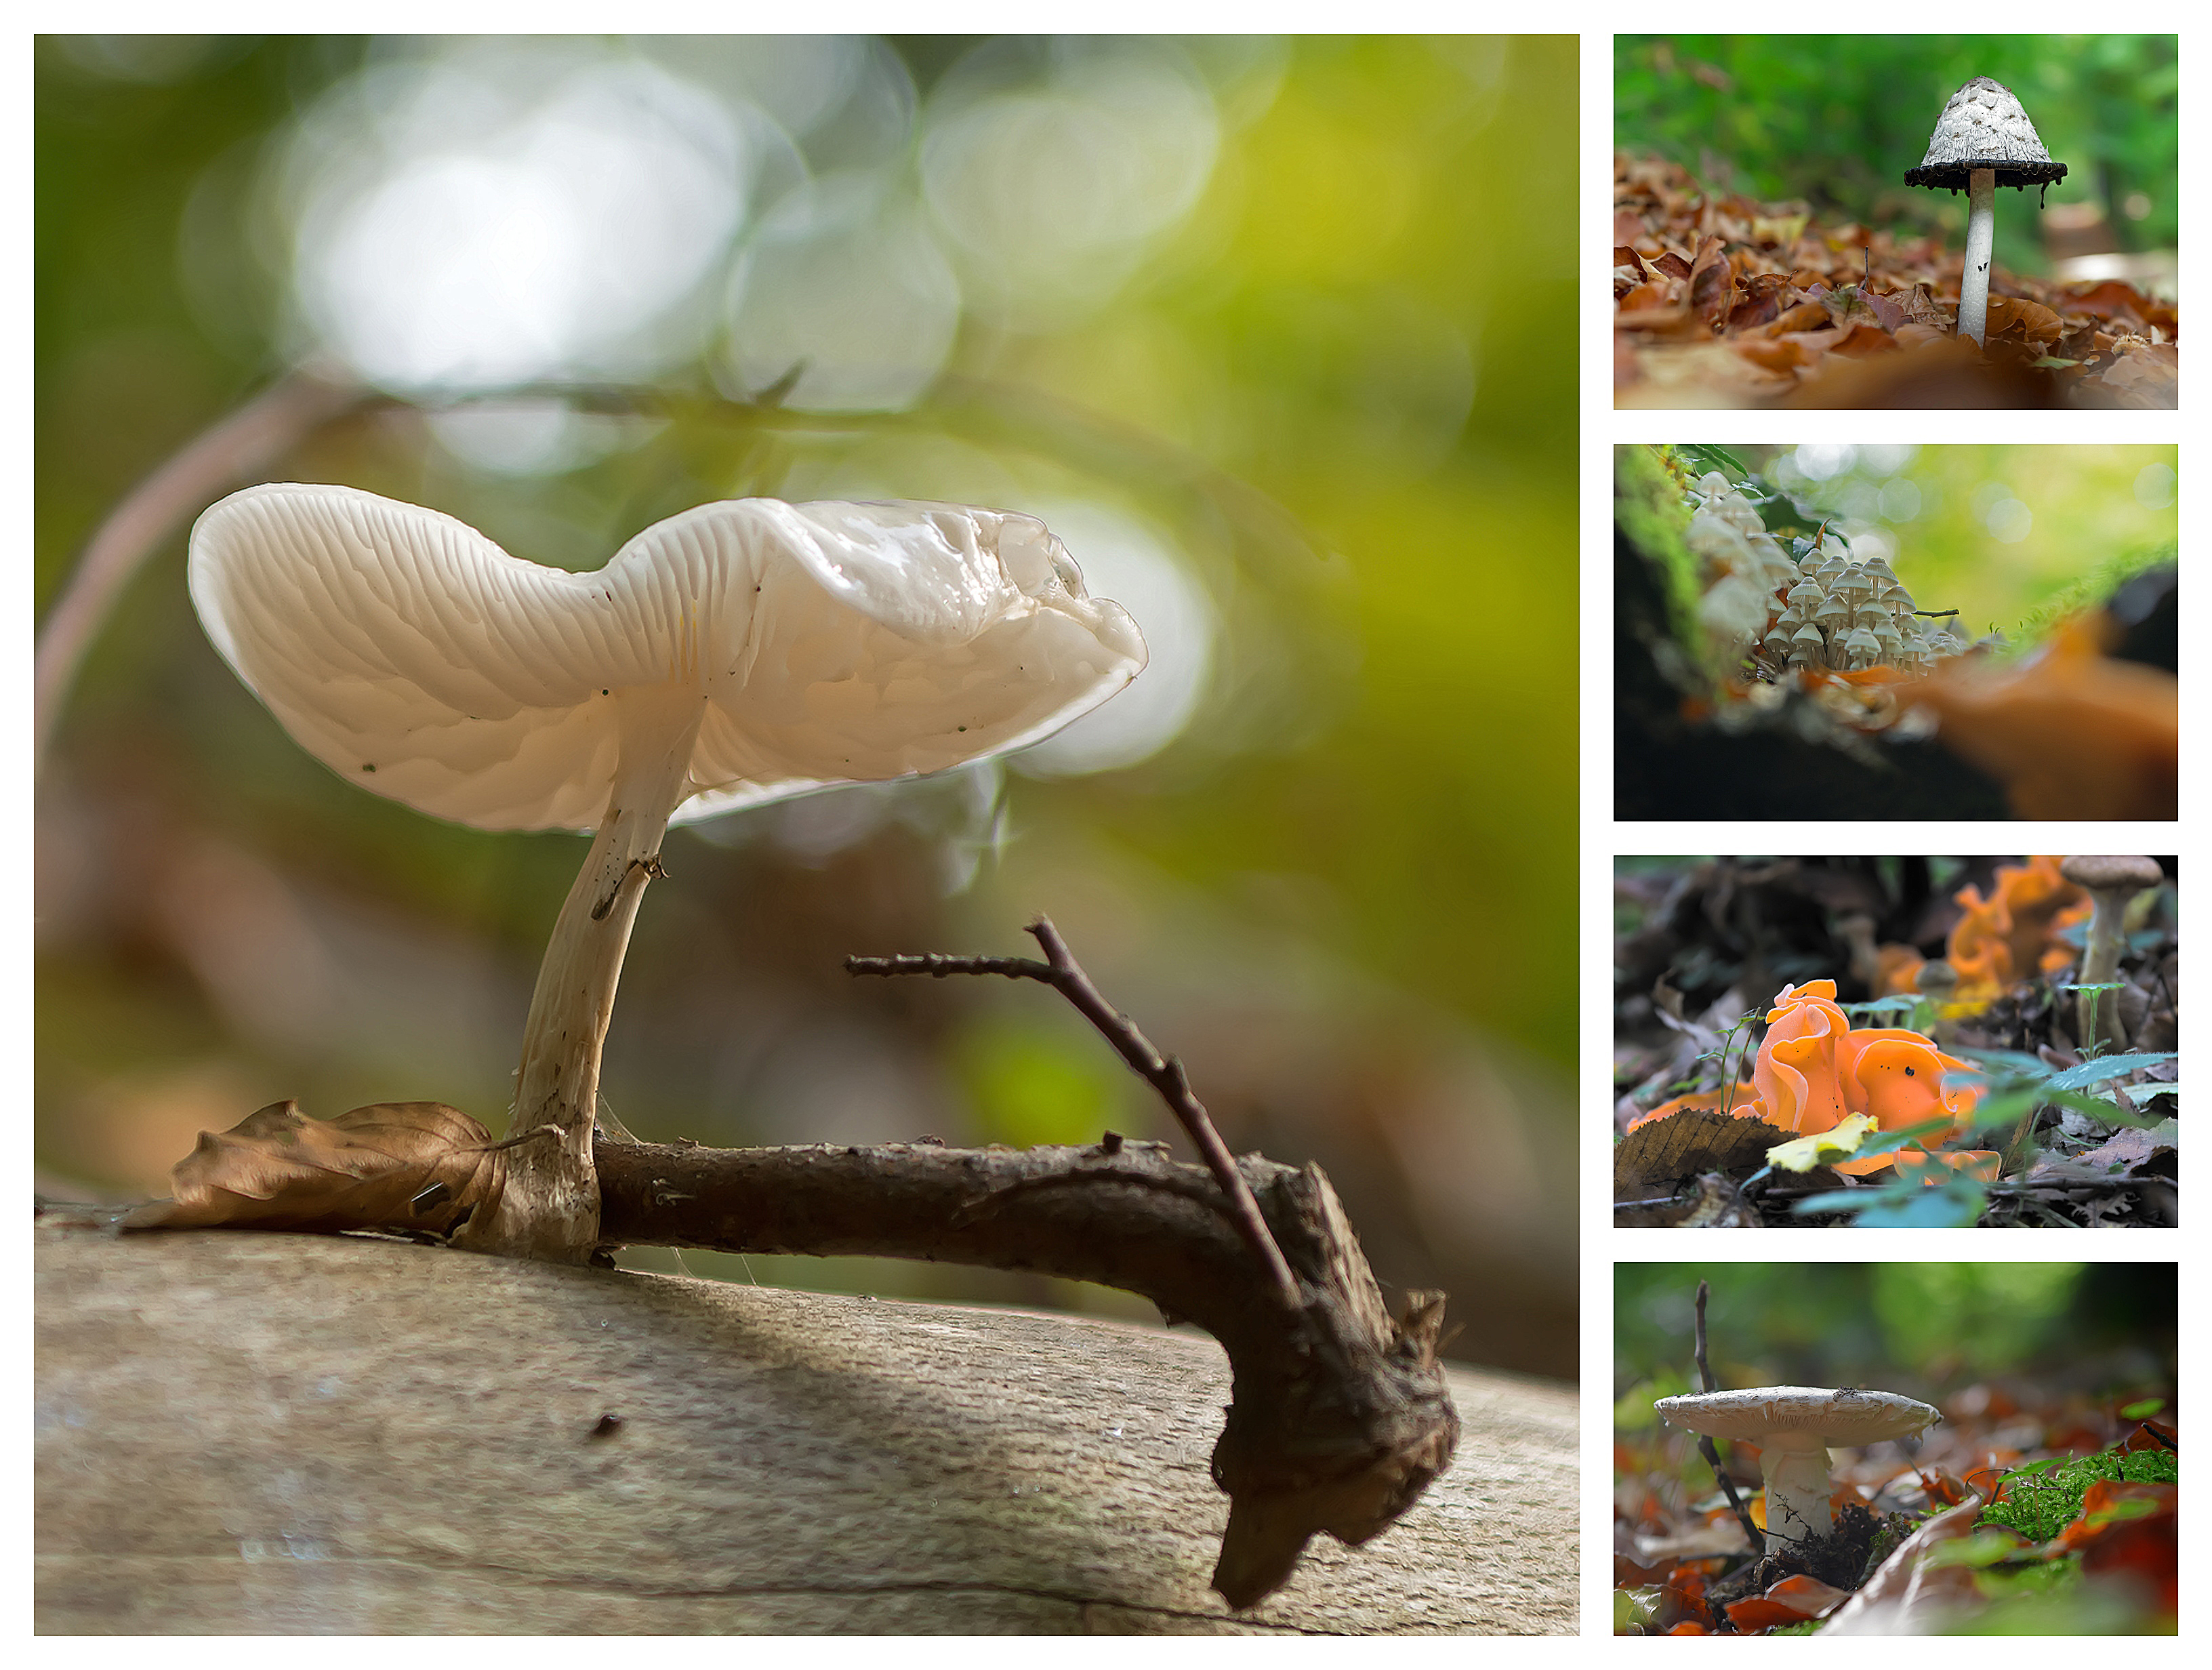 Mushroom collage ...